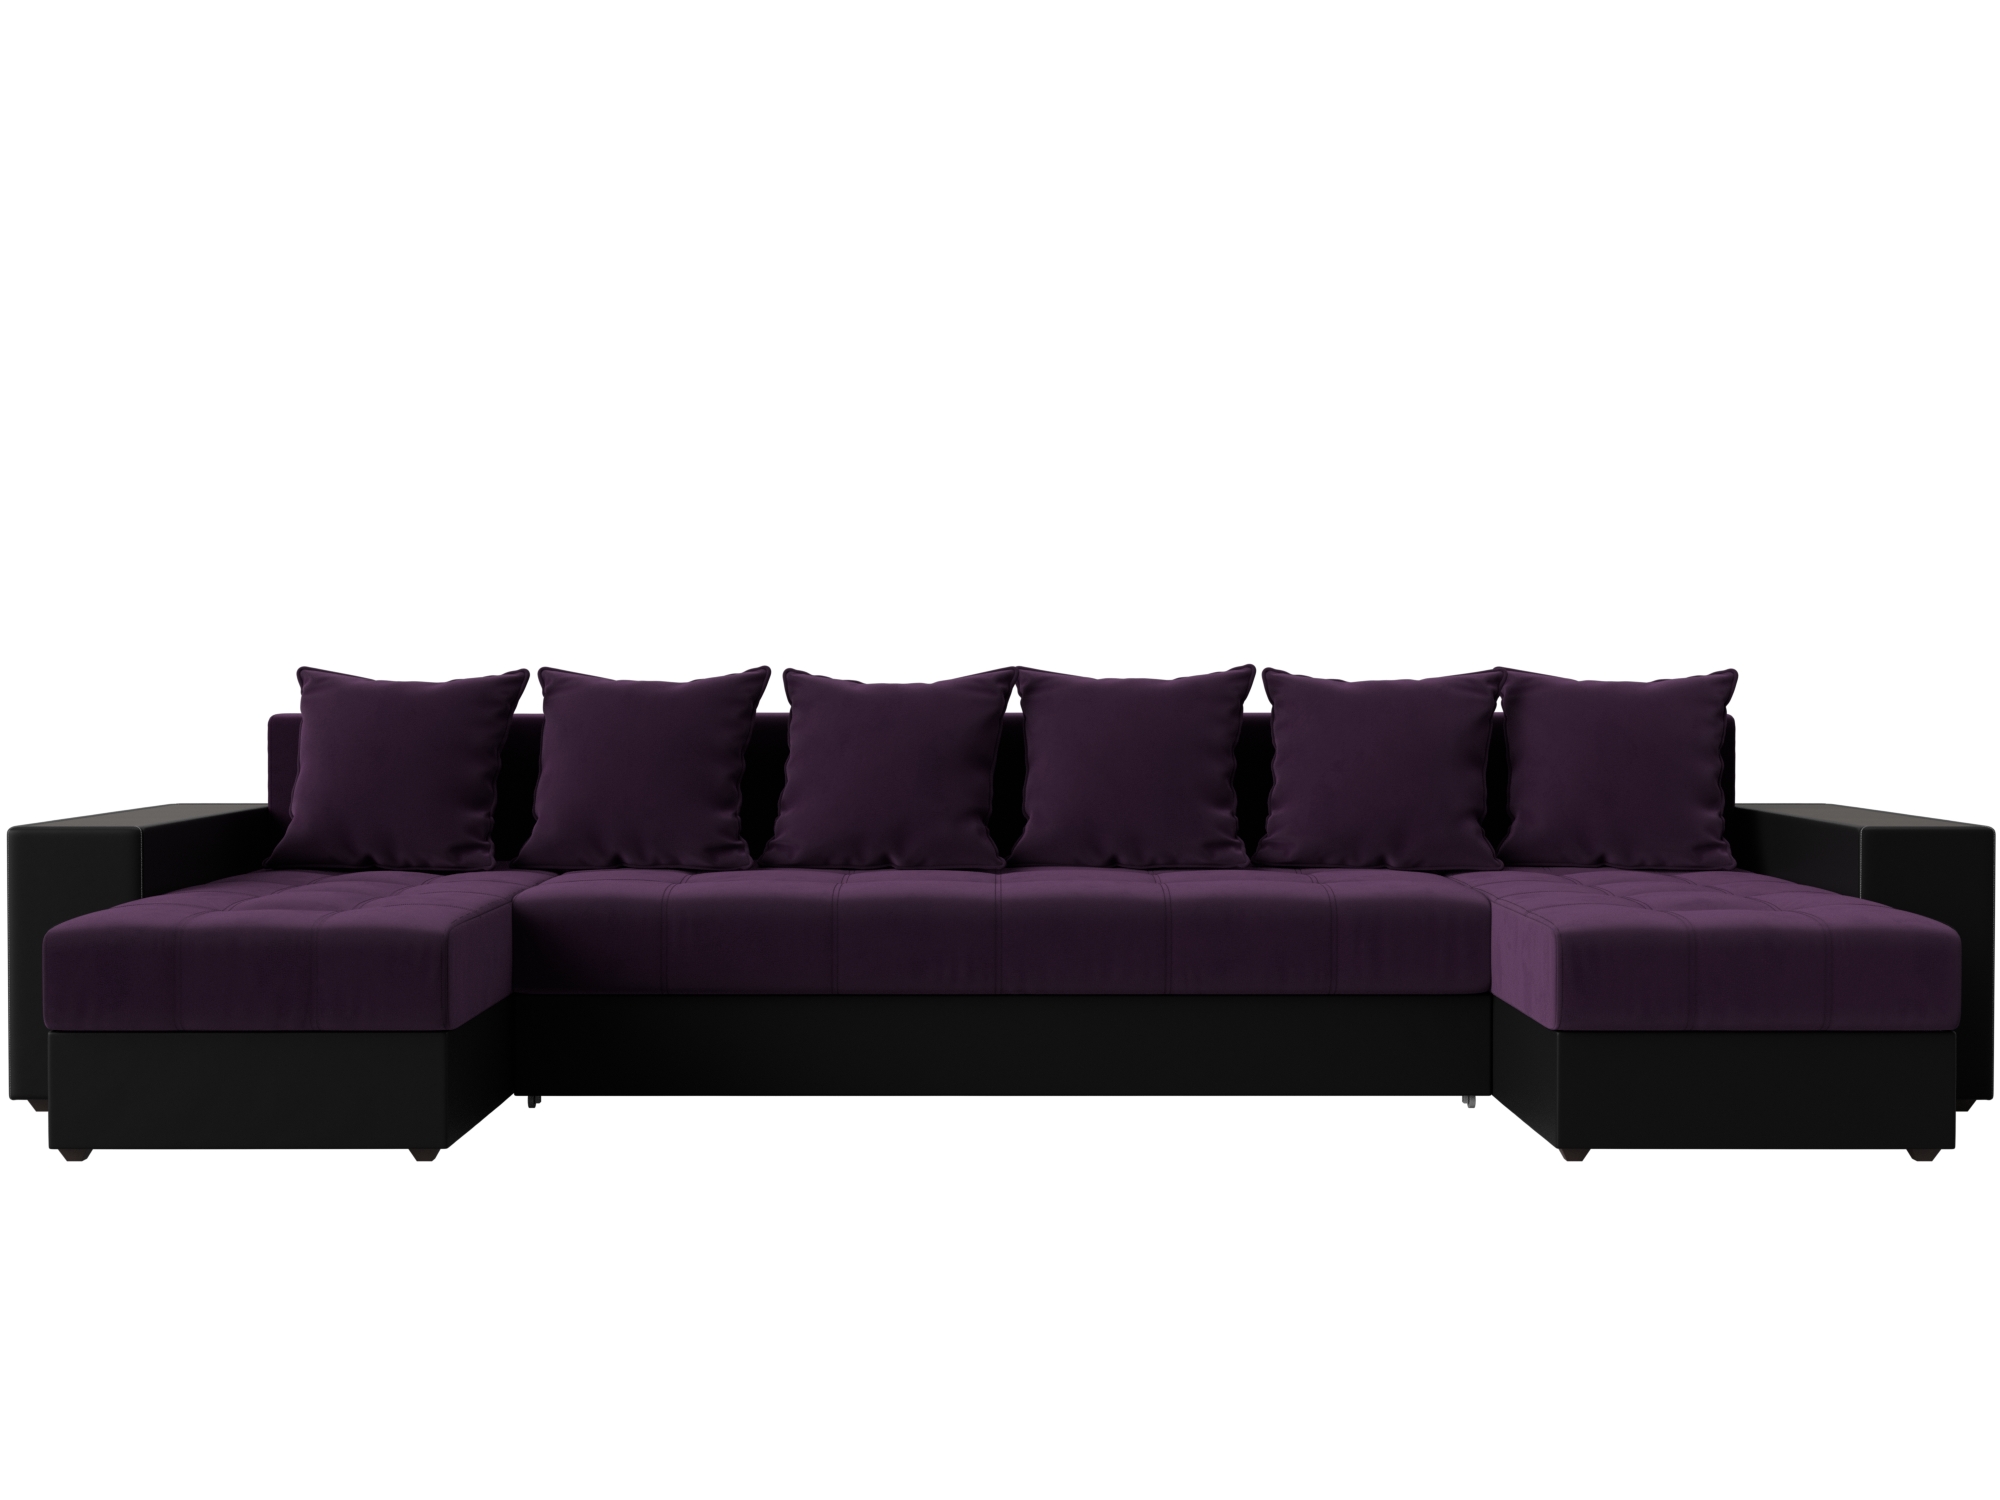 П-образный диван Дубай полки слева (Фиолетовый\Черный)